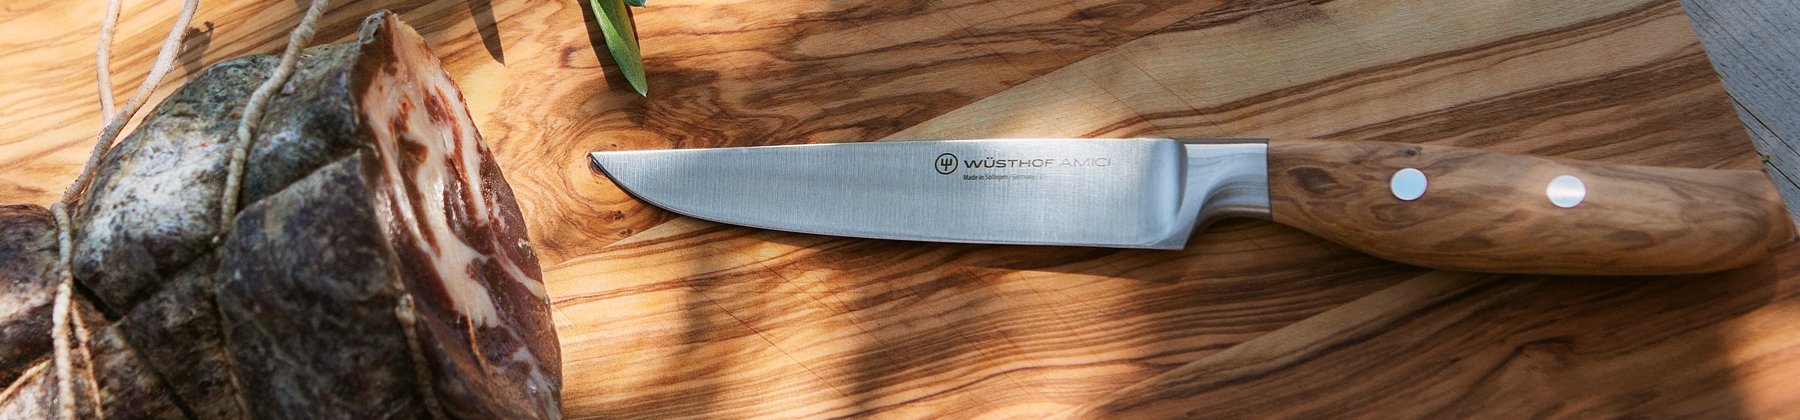 Photo of Wusthof Knife